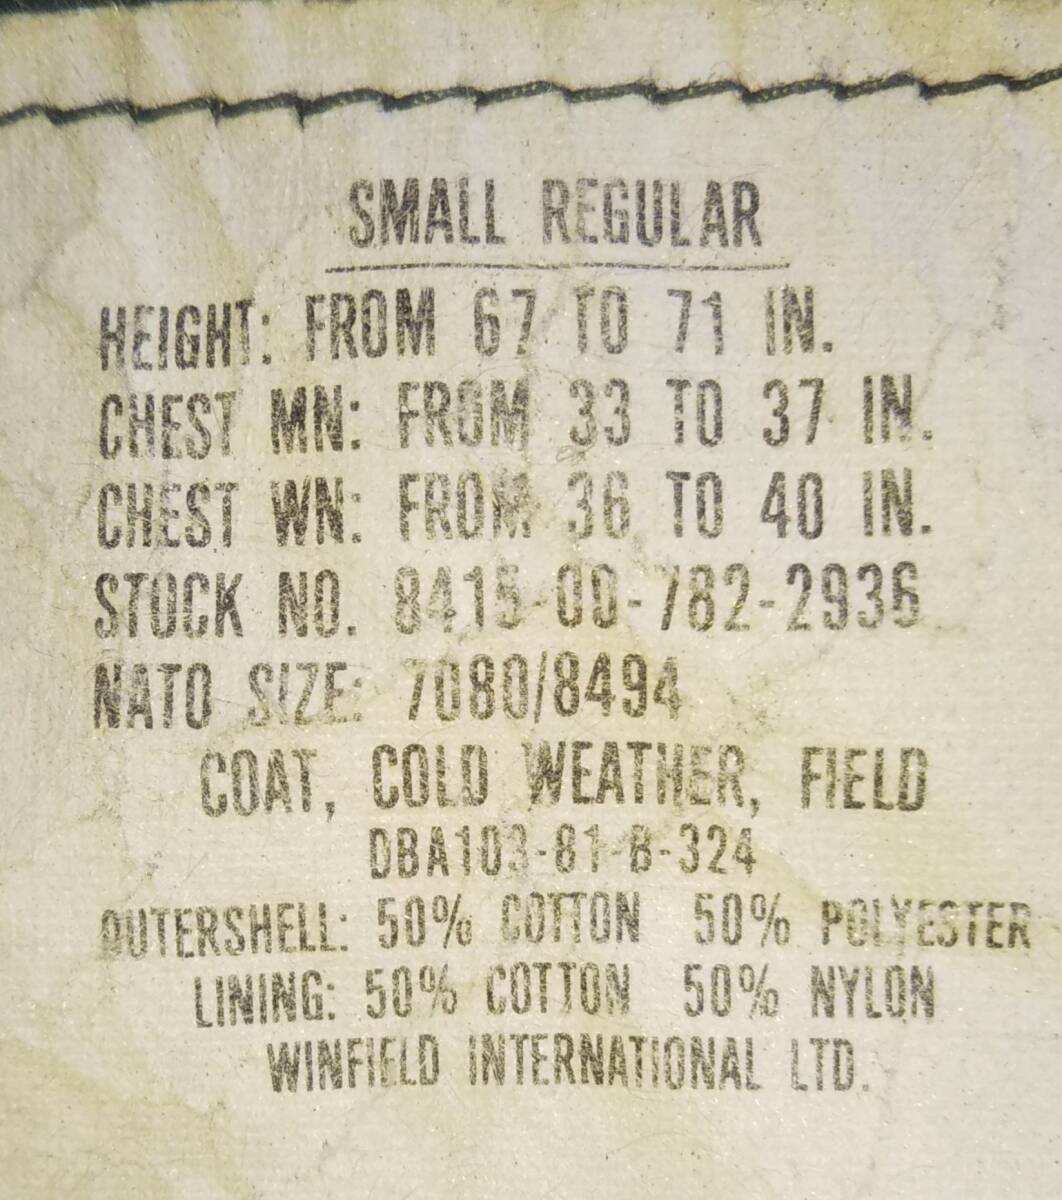 WINFIELD INTERNATIONAL USA製 81年 M-65 フィールドジャケット sizeSMALL-REGULAR カーキの画像3